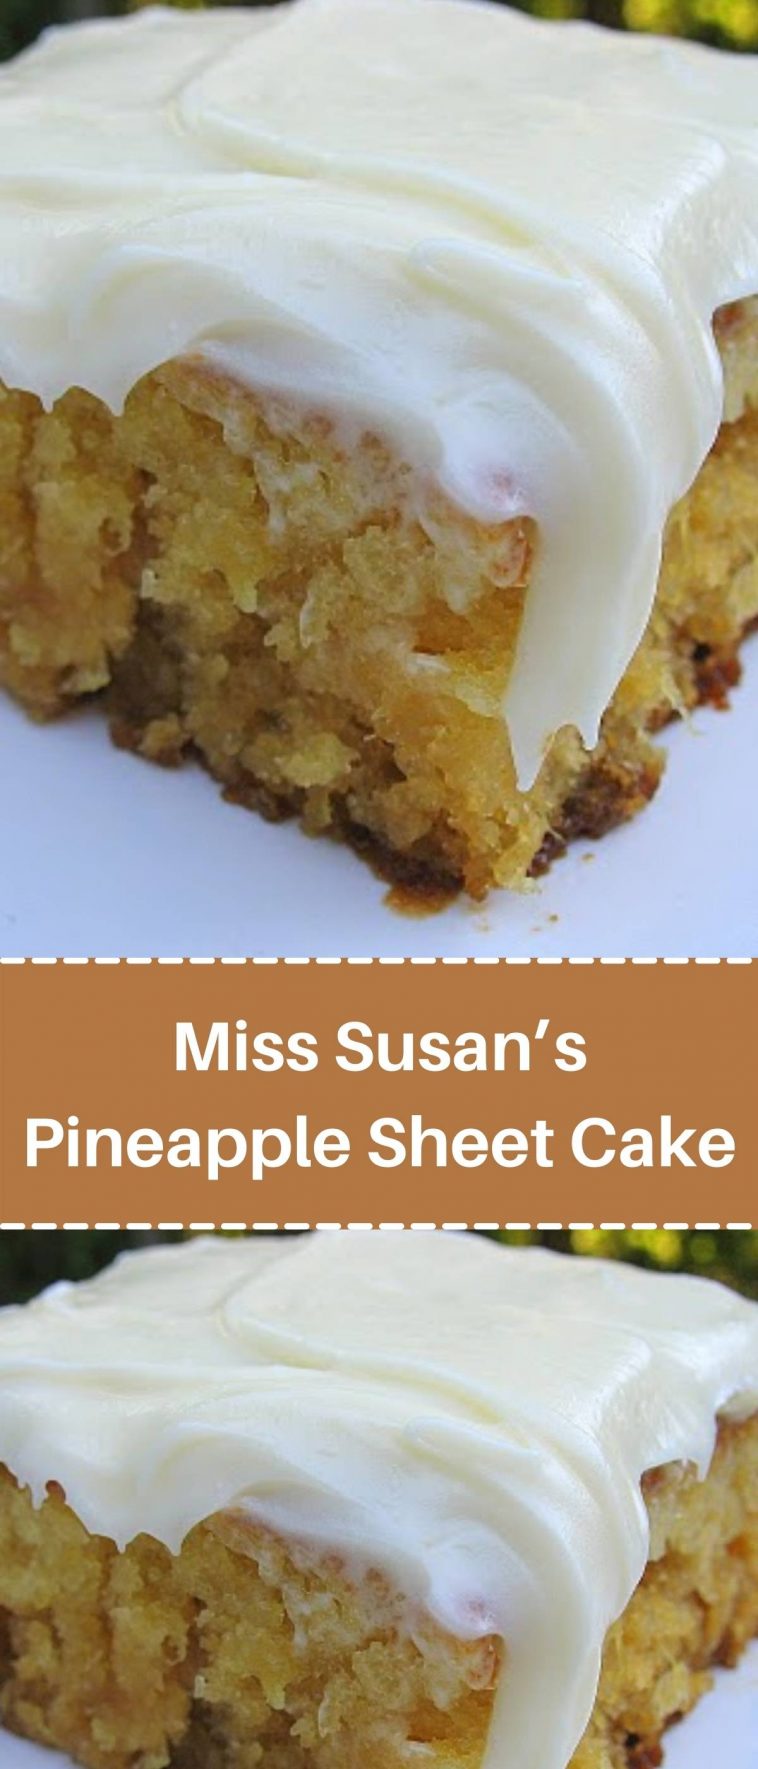 Miss Susan’s Pineapple Sheet Cake